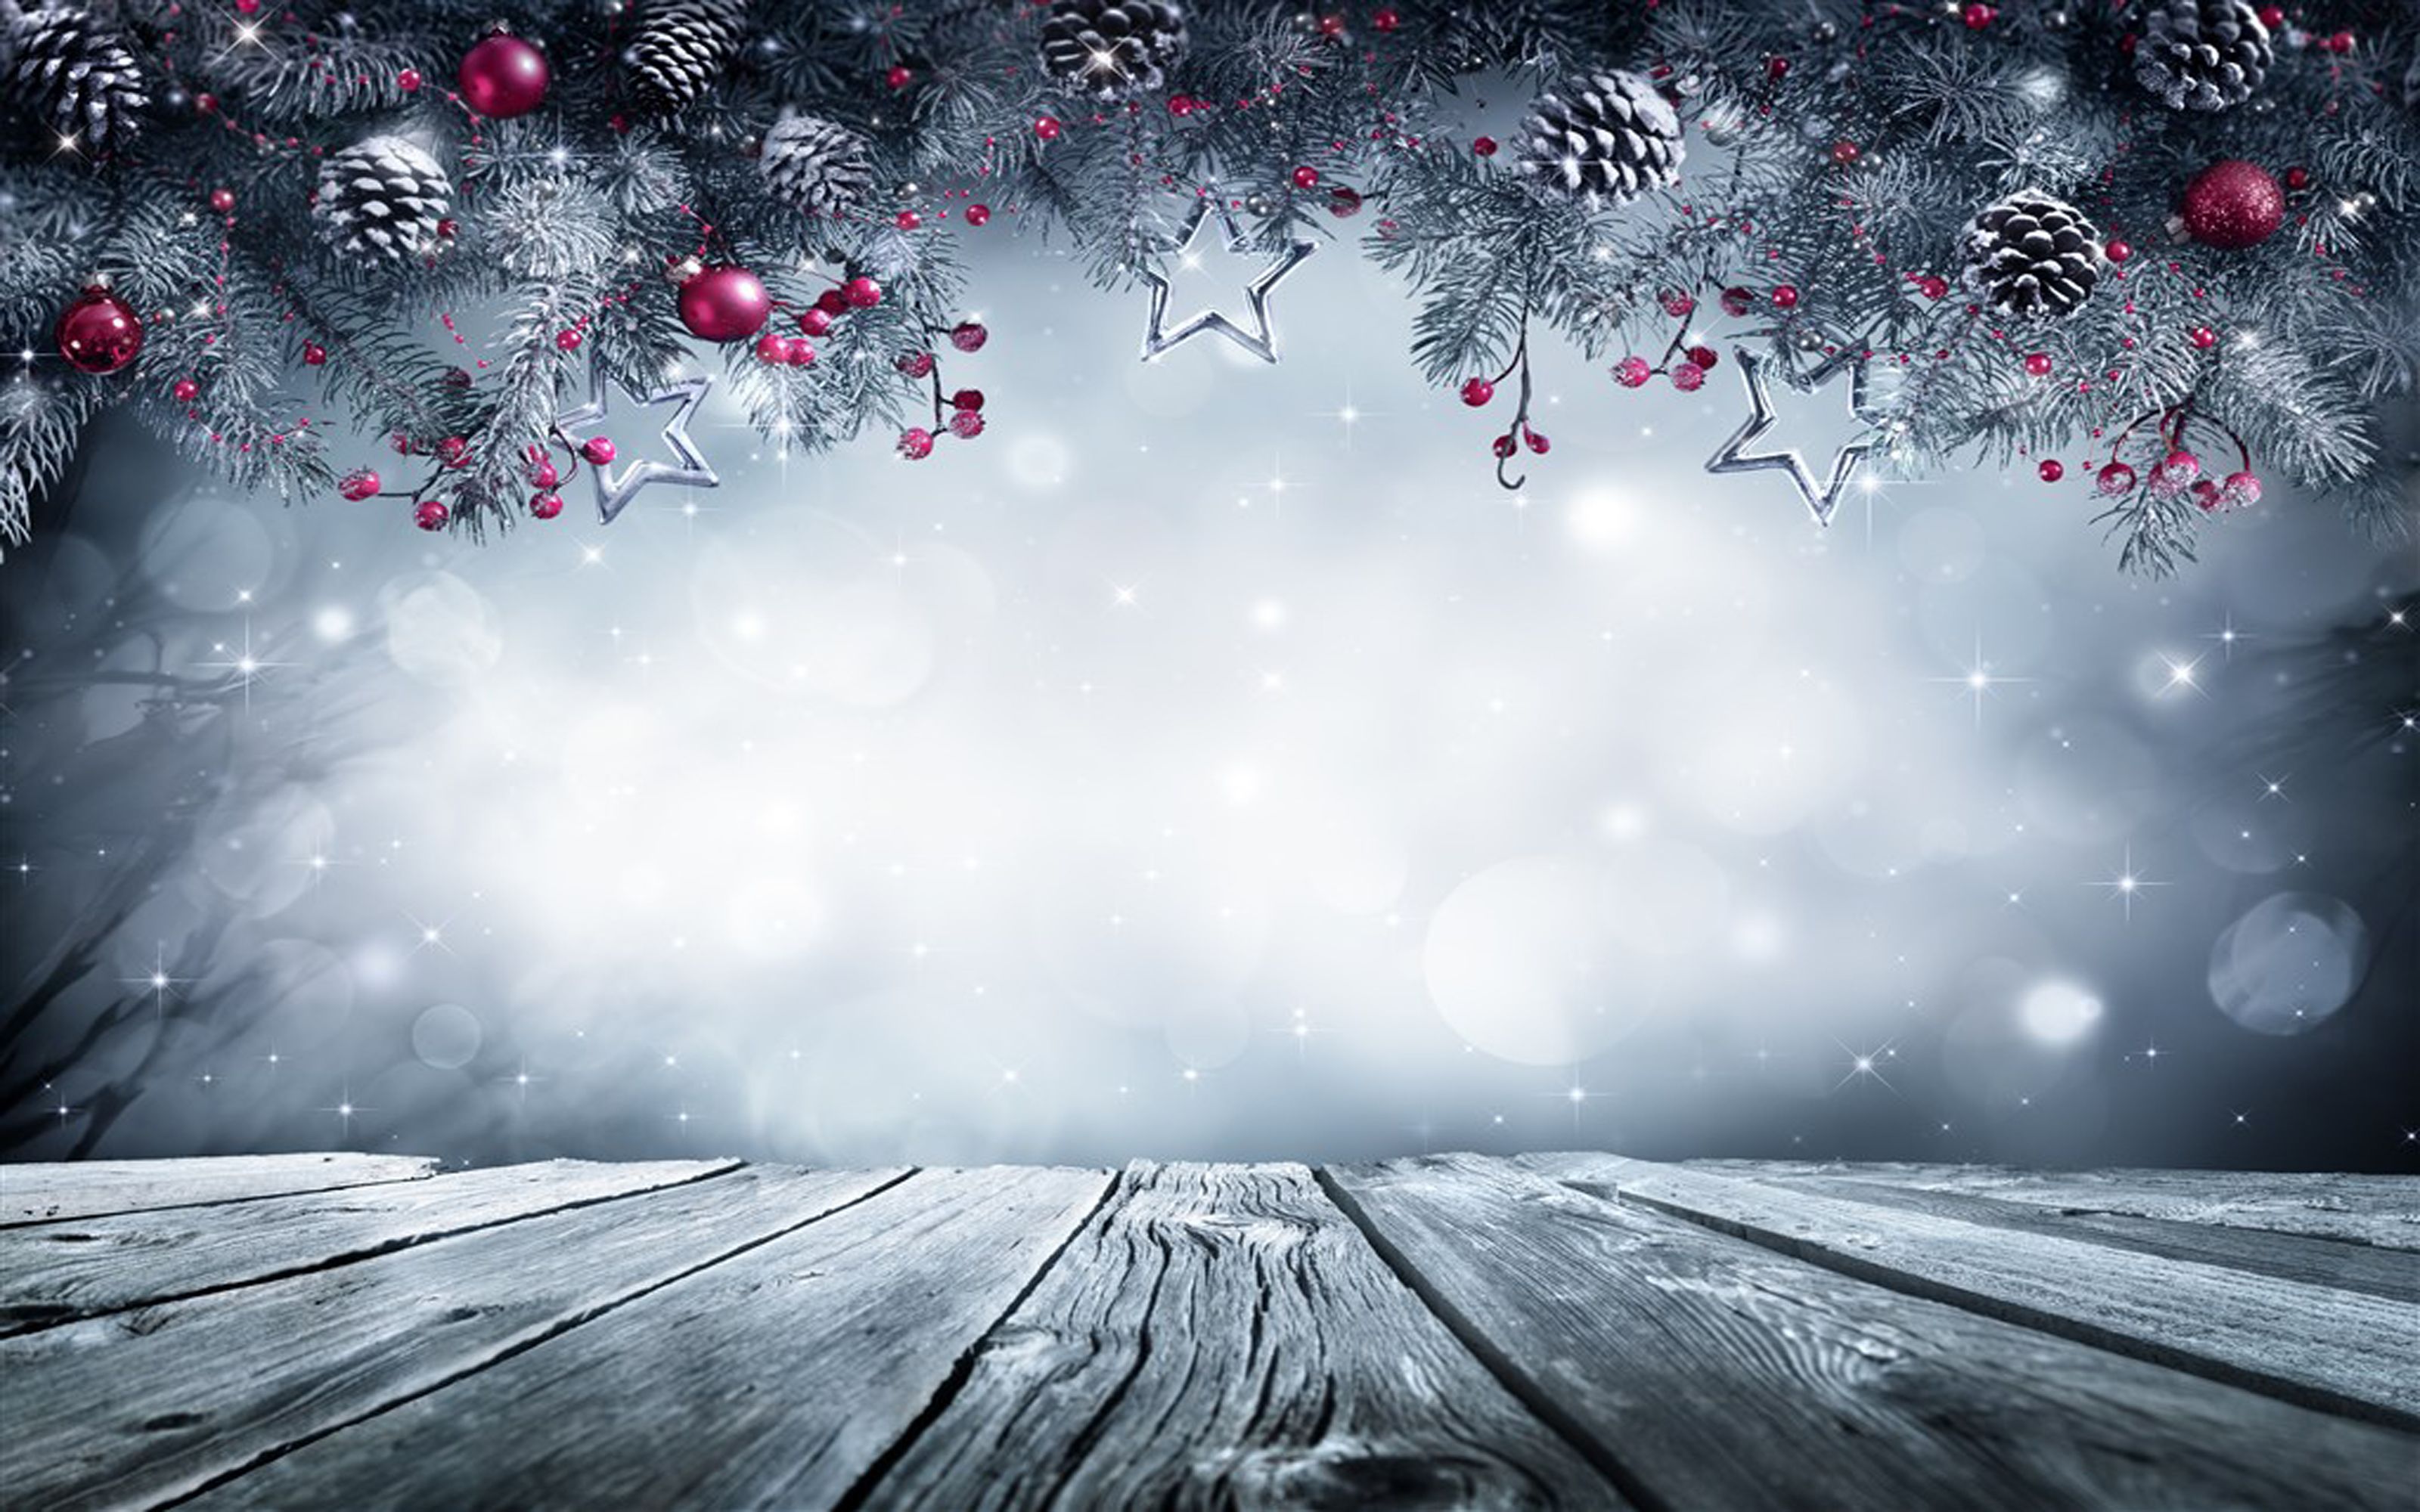  Desktop Weihnachten Hintergrundbild 3200x2000. Eis Crystal Schnee Star Hintergrund. Winter hintergründe, Weihnachten hintergrundbilder, Desktop hintergrund winter